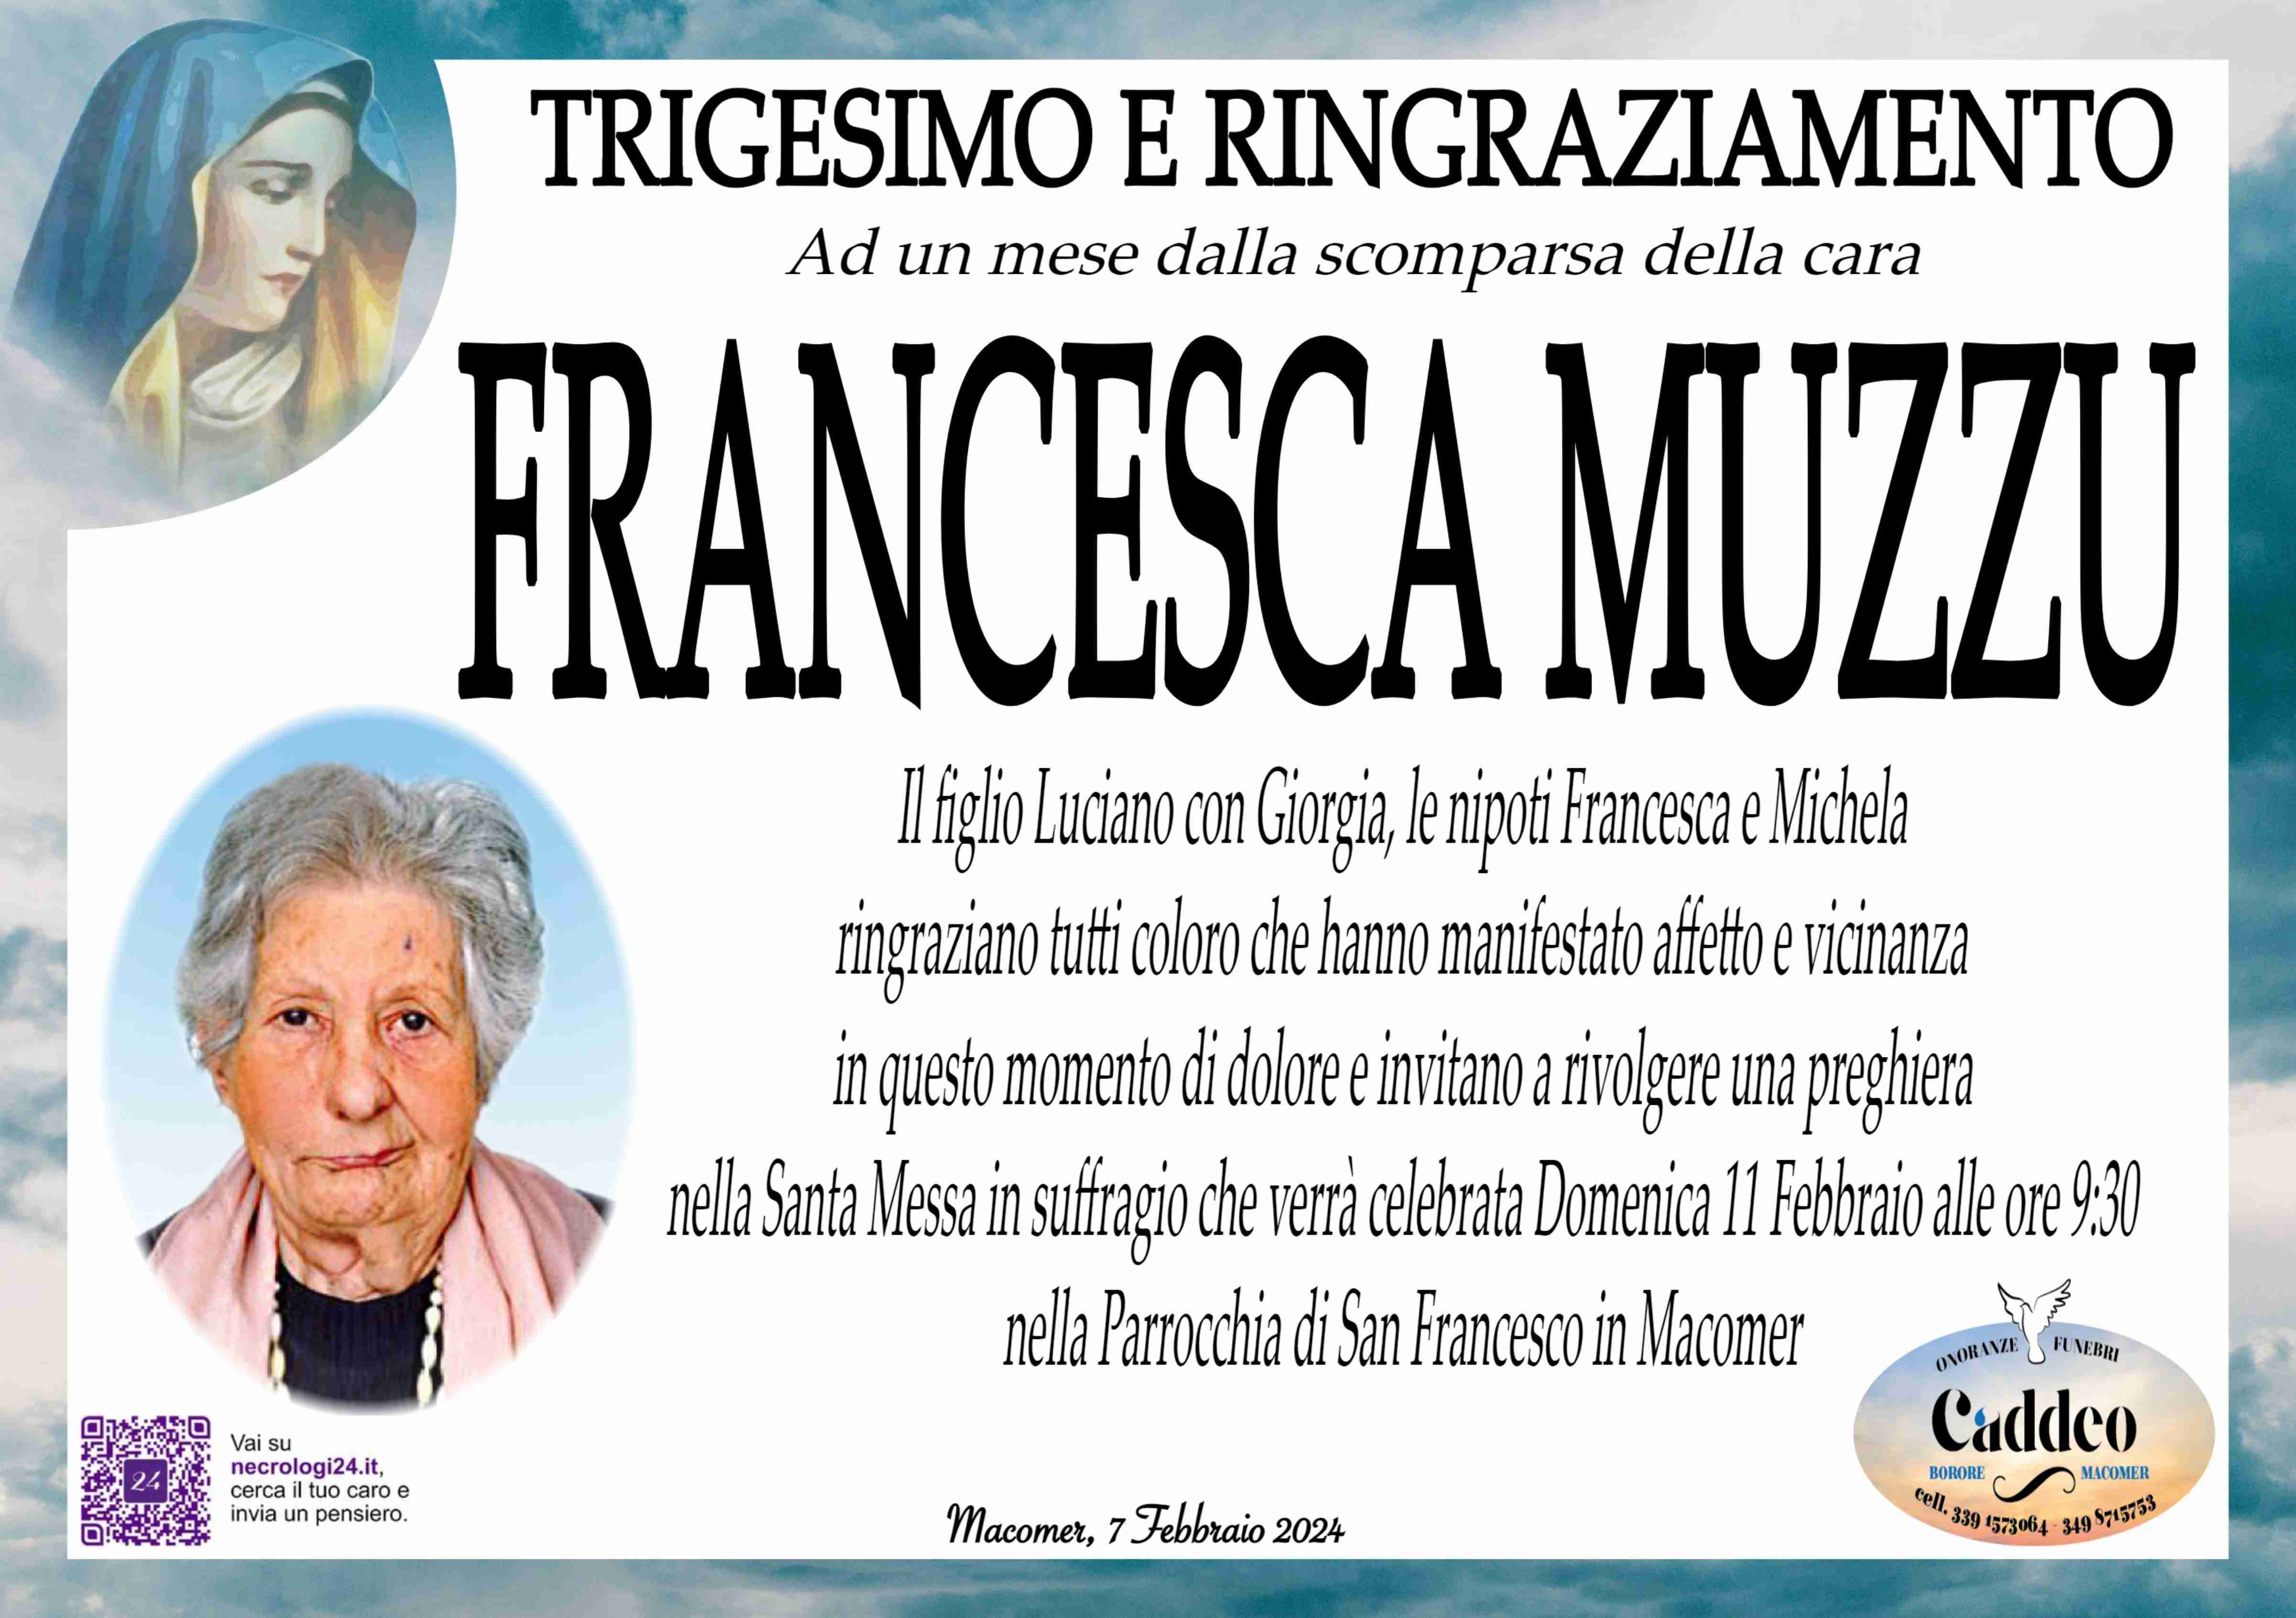 Francesca Muzzu